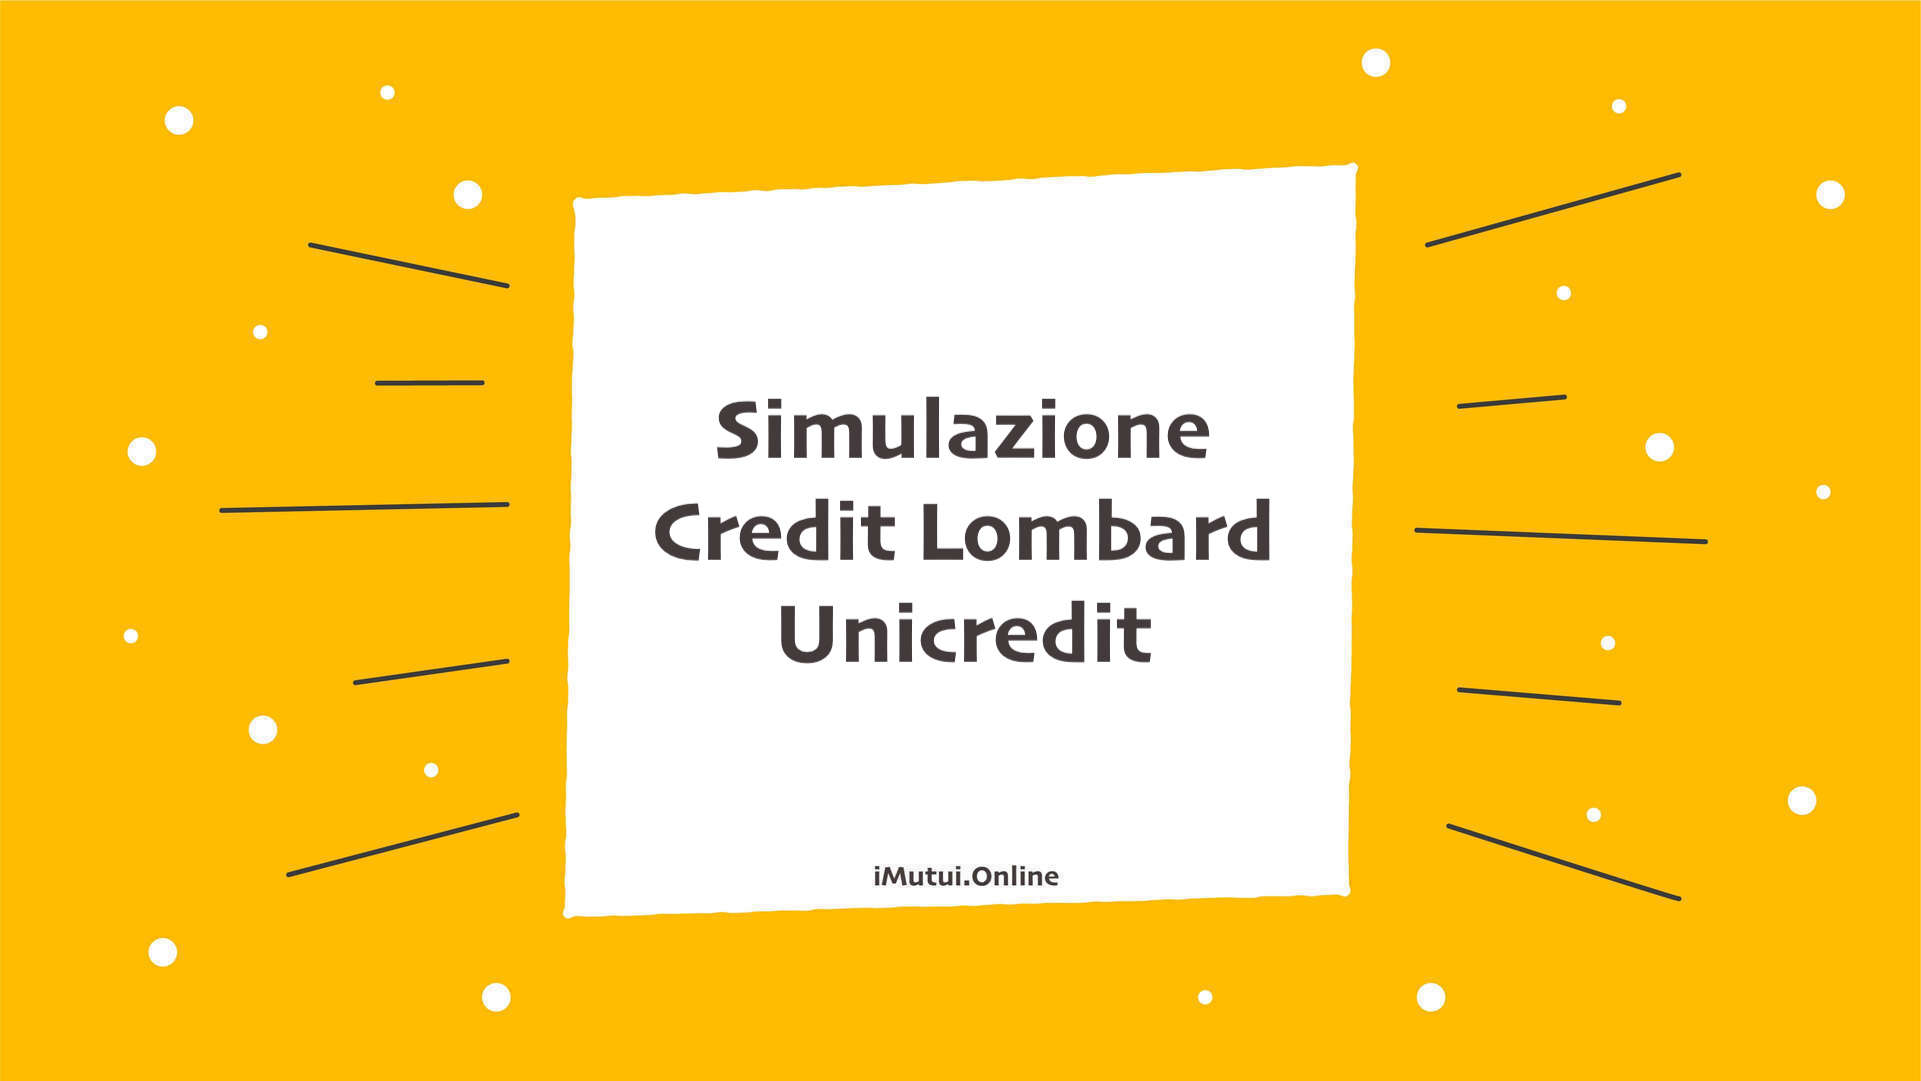 Simulazione Credit Lombard Unicredit